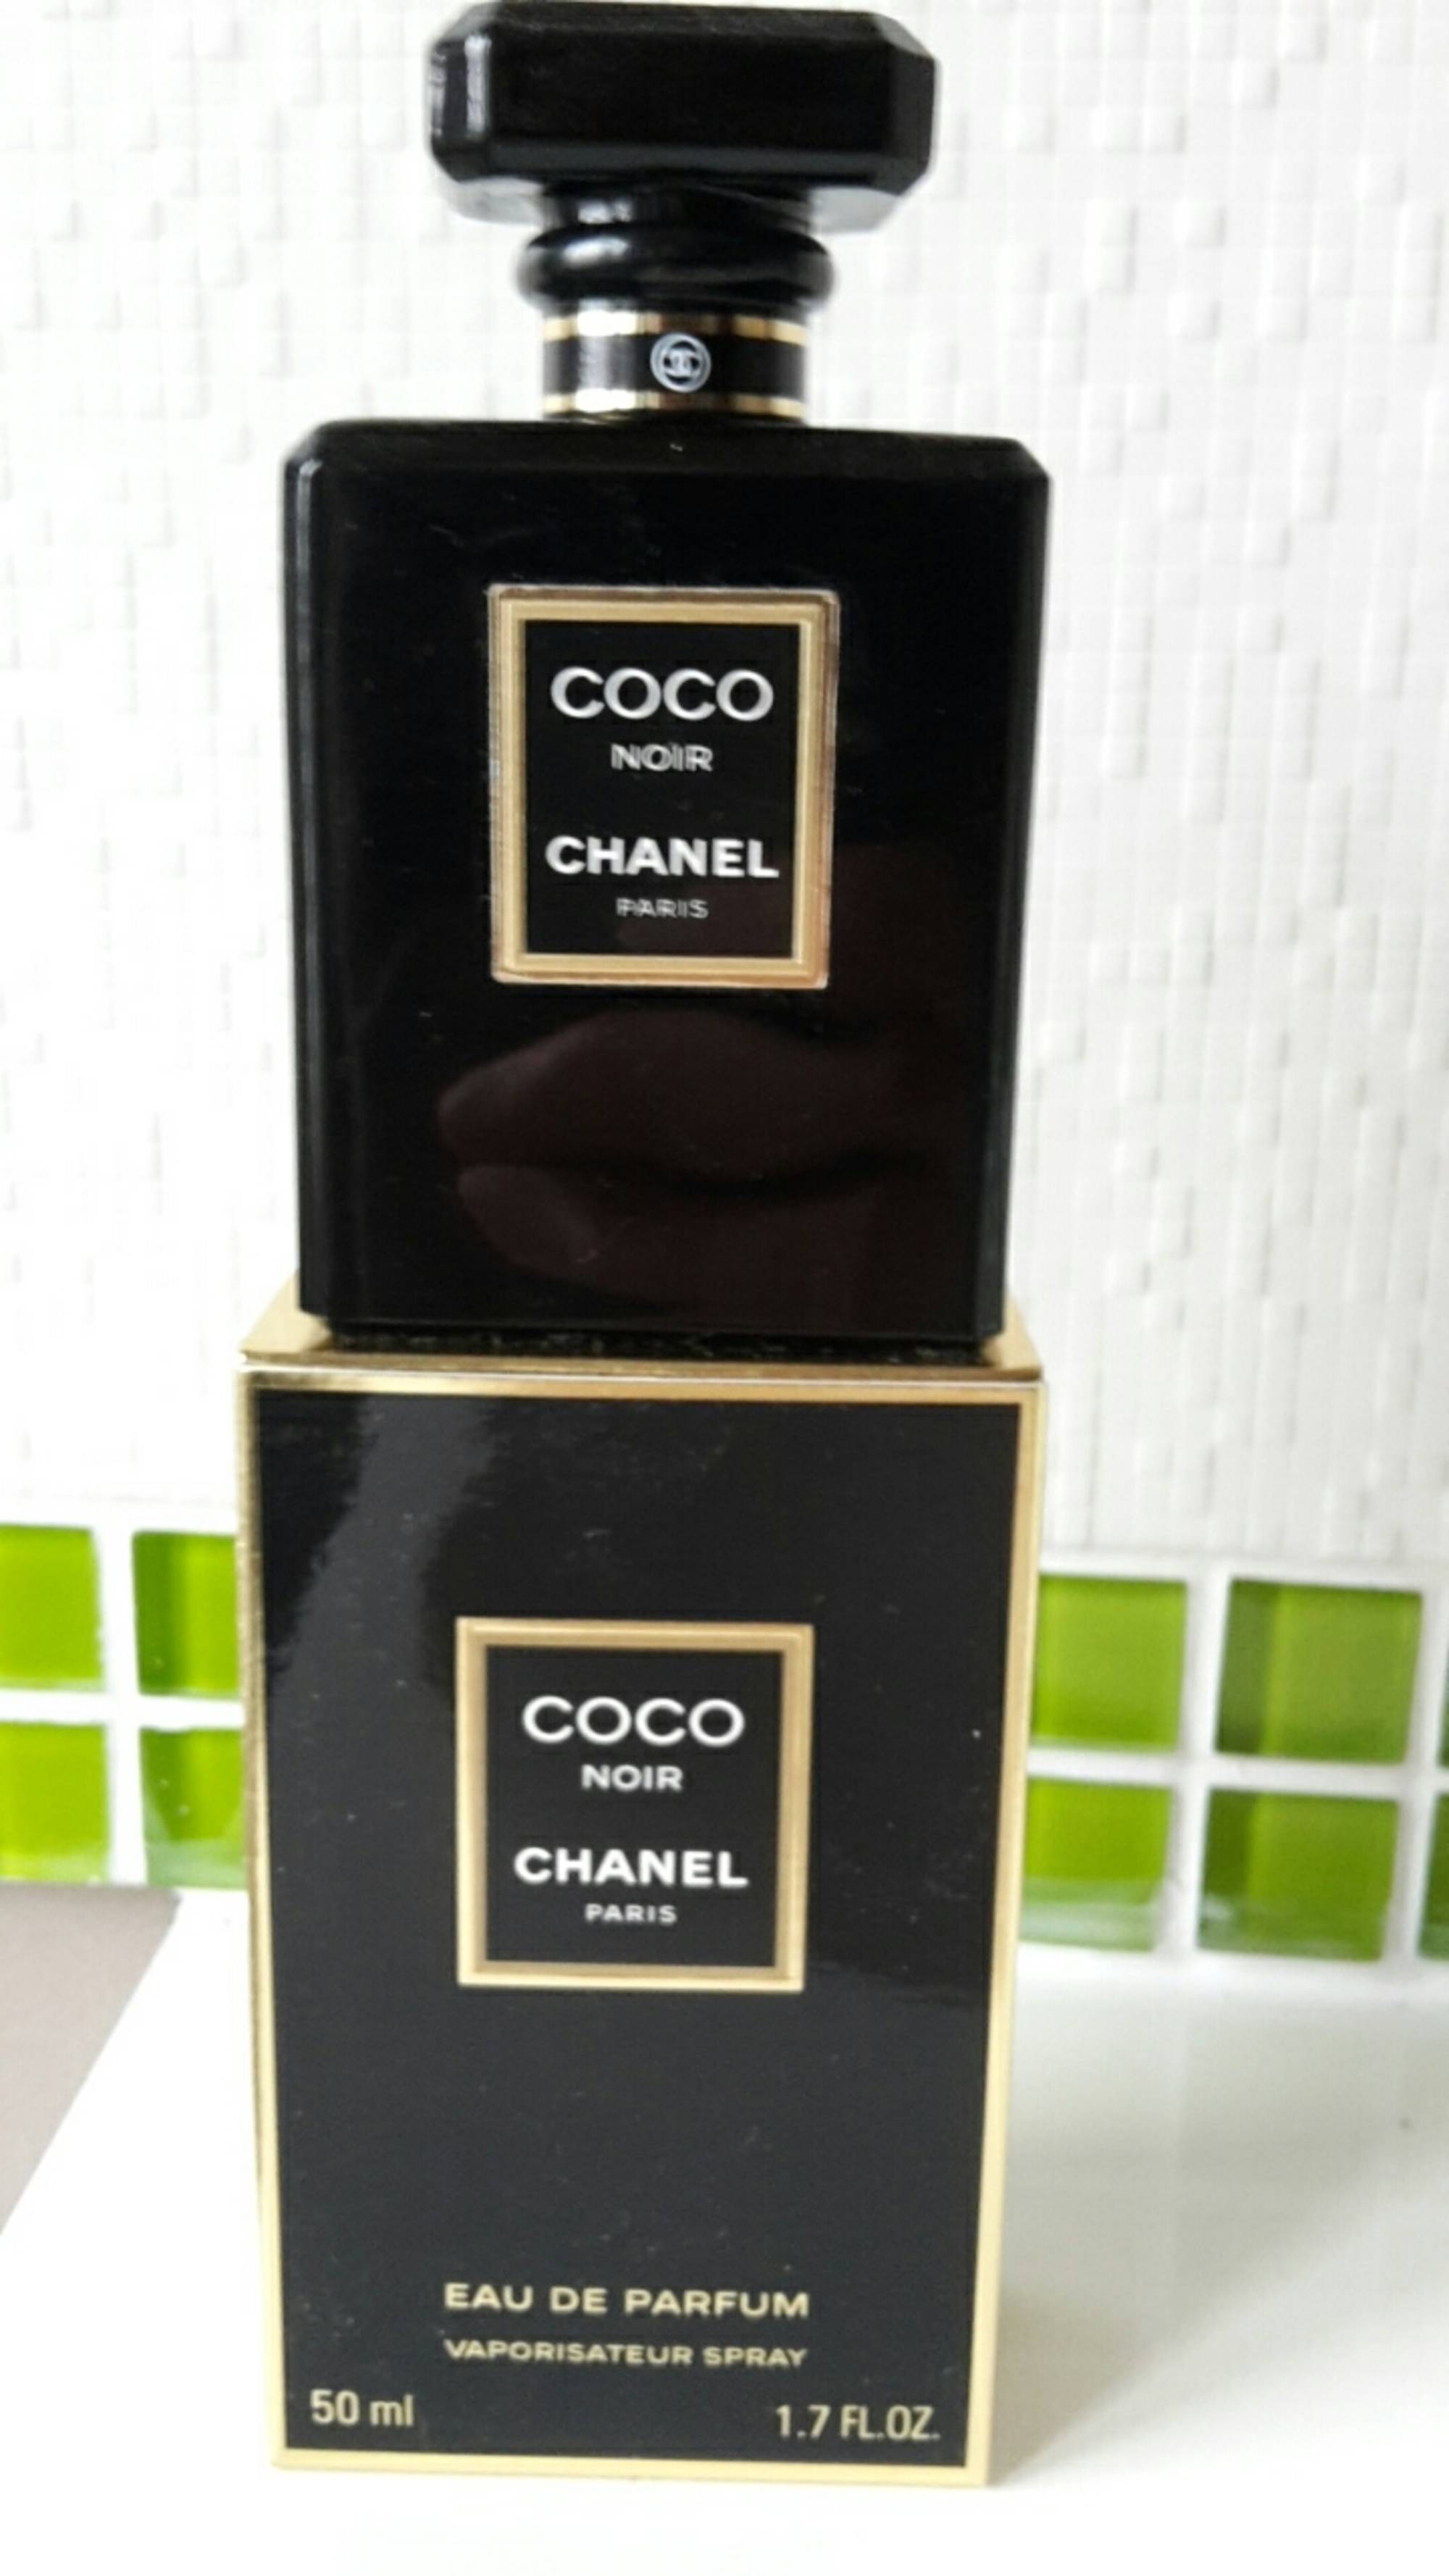 CHANEL - Coco noir - Eau de parfum